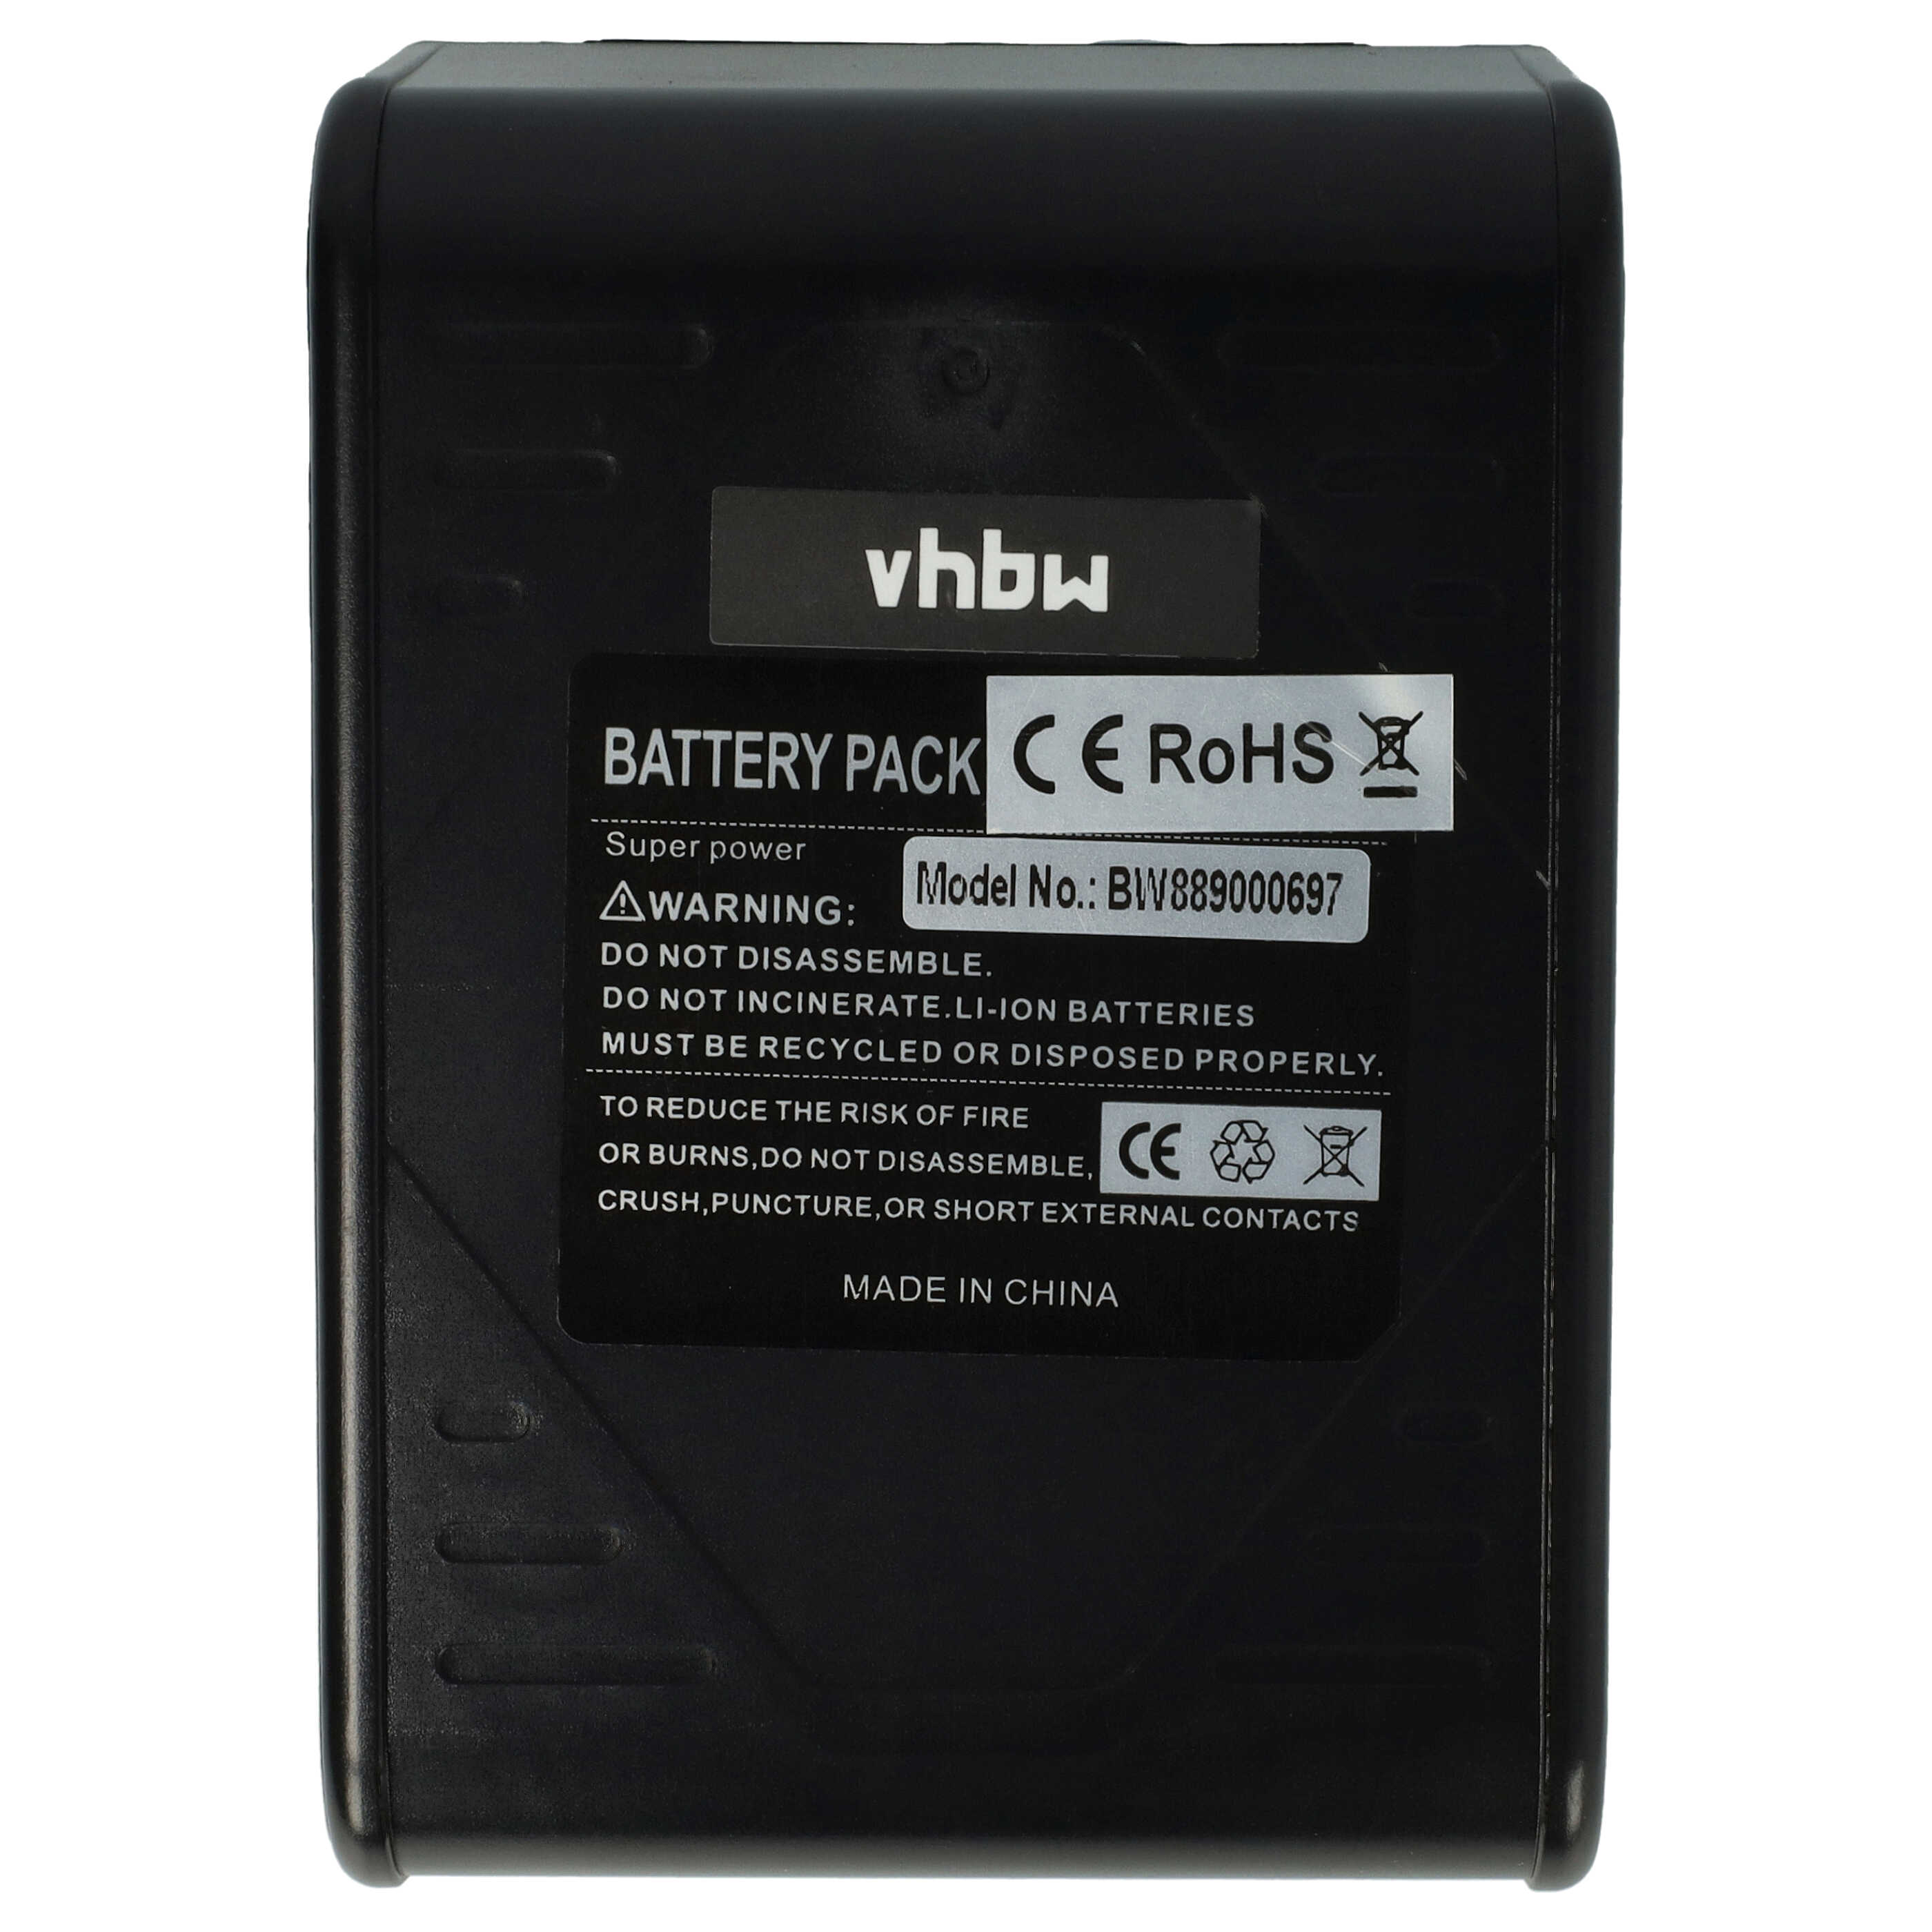 Batterie remplace Hoover BH15030, BH15030C, BH15040, BH15260BH15260PC pour aspirateur - 6000mAh 20V Li-ion